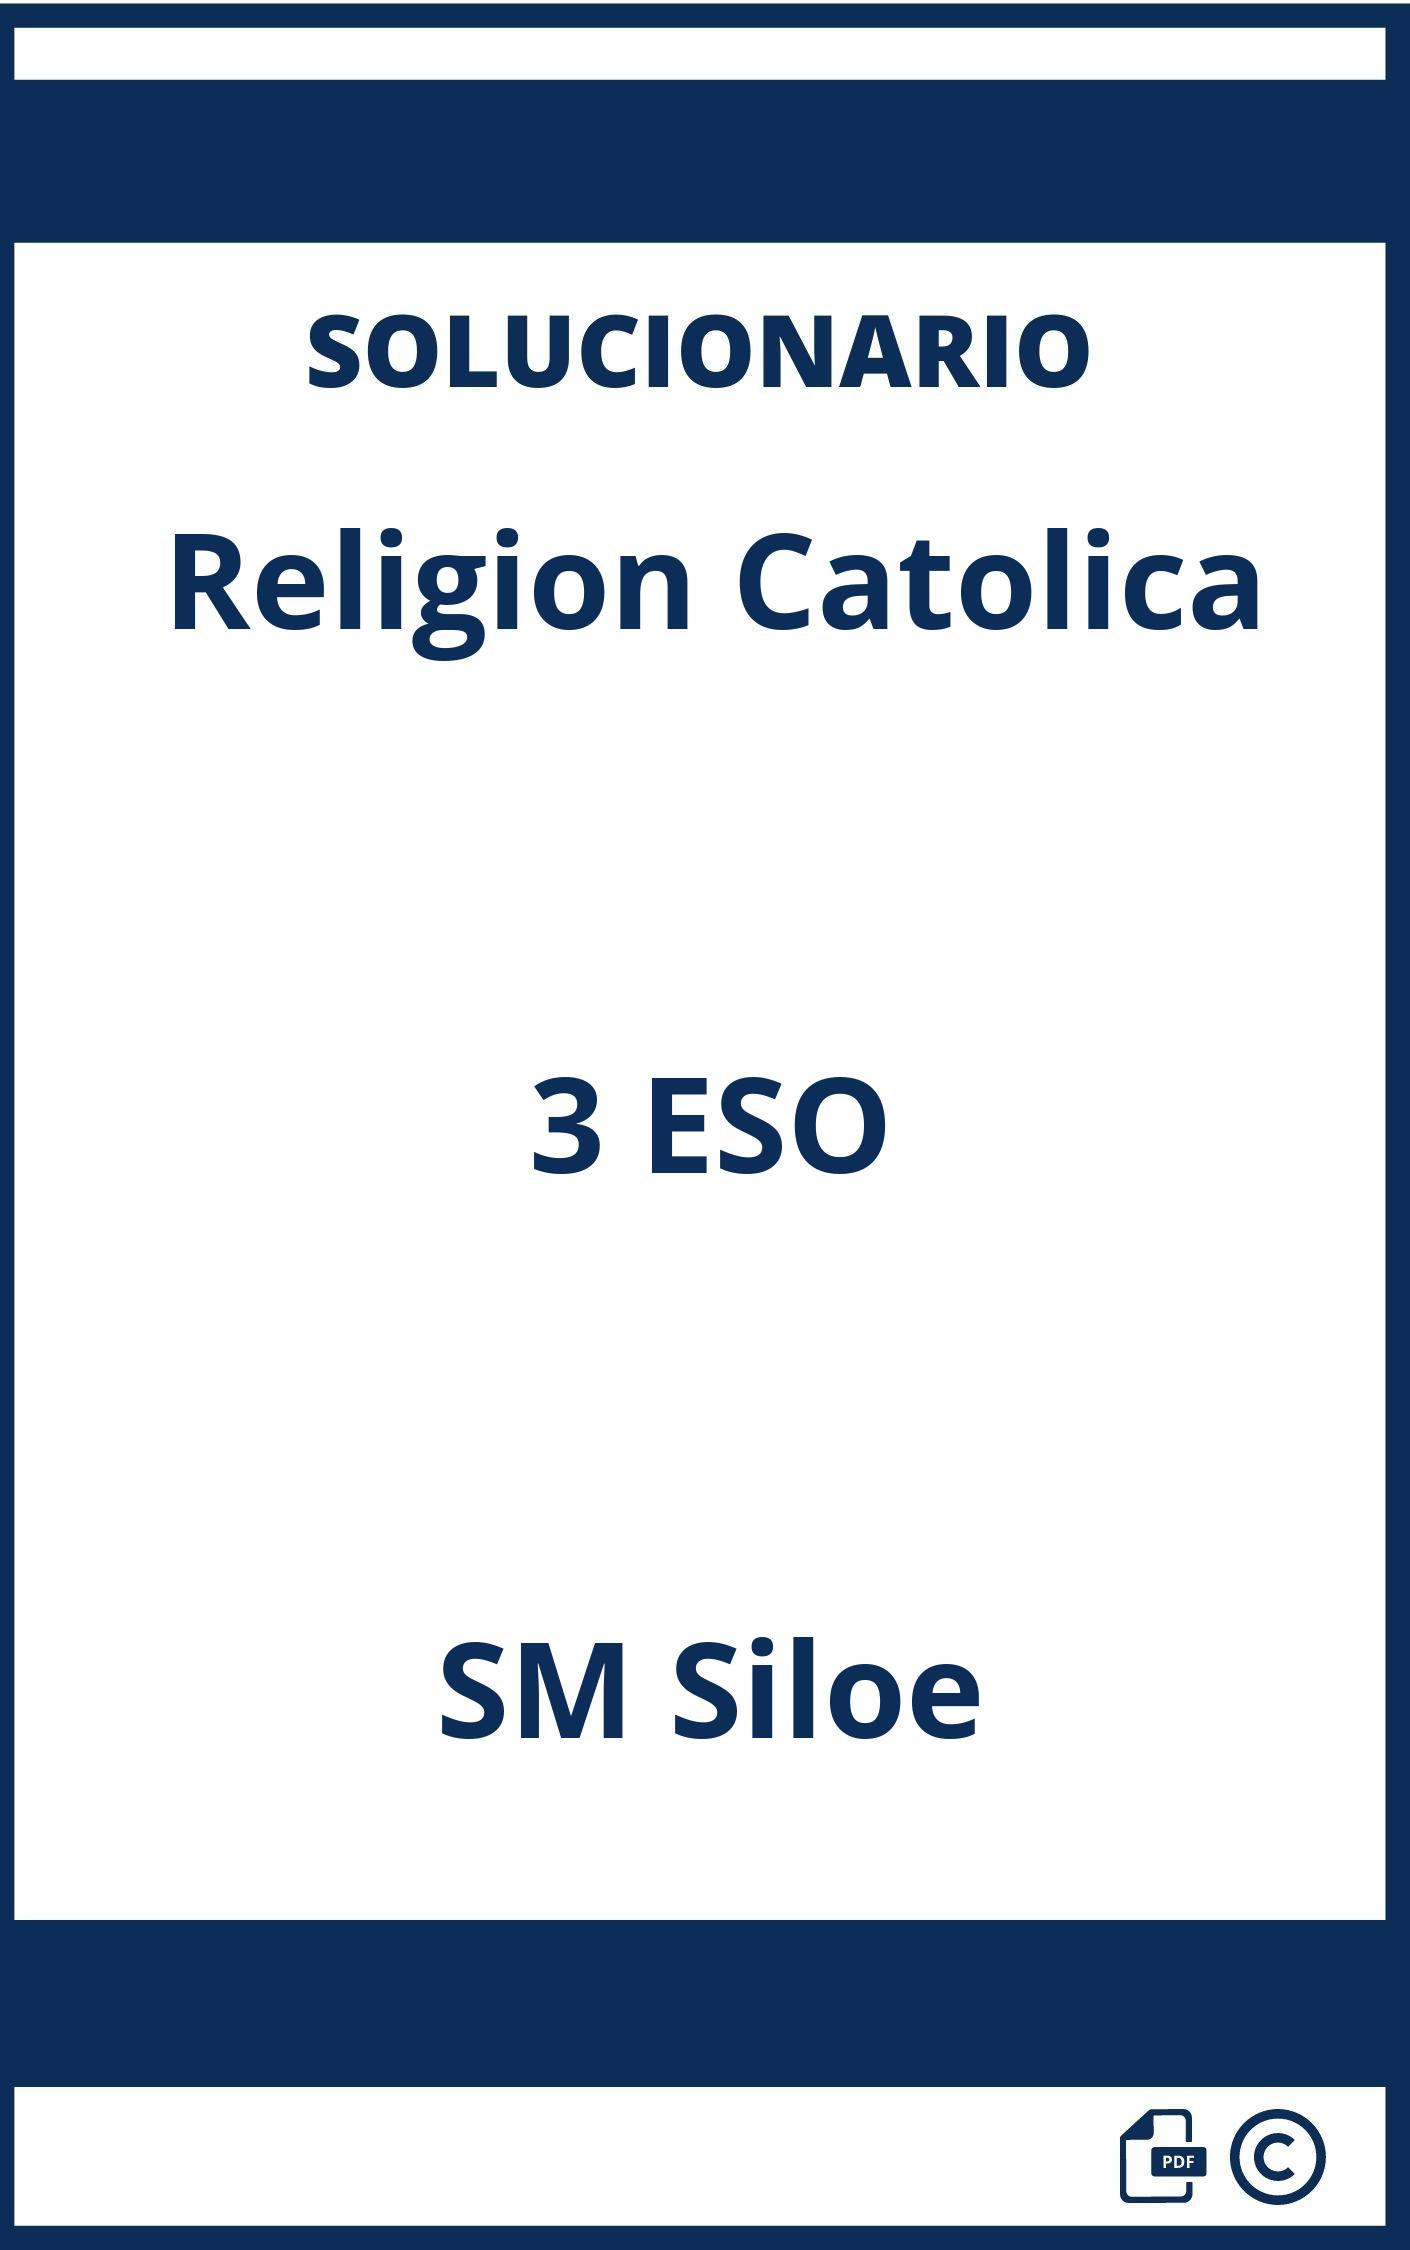 Solucionario Religion Catolica 3 ESO SM Siloe